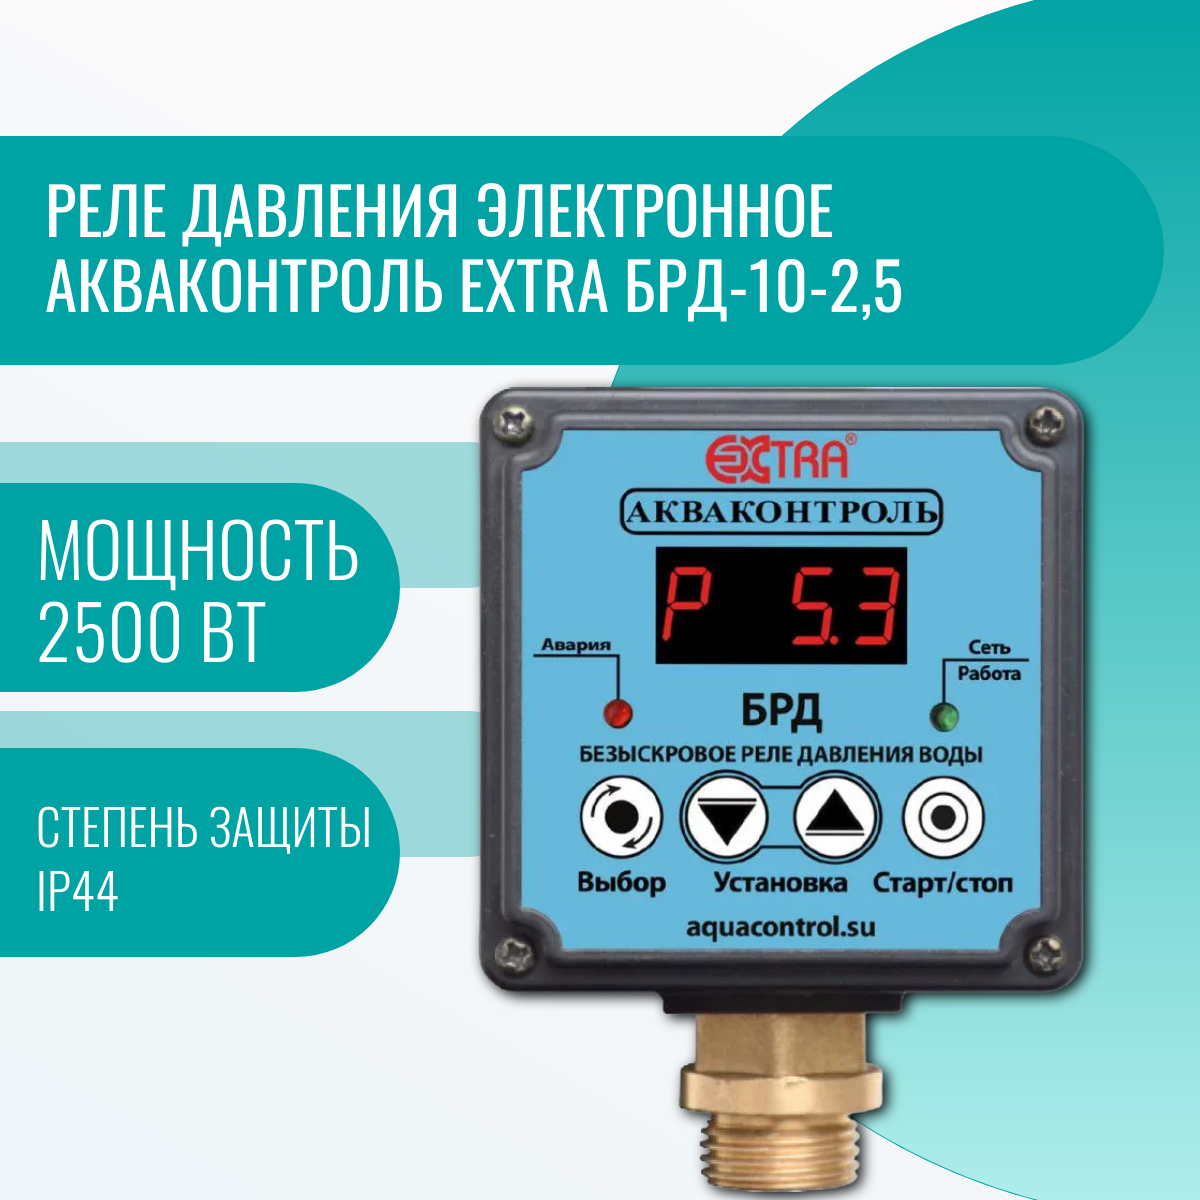 Реле давления электронное Акваконтроль Extra БРД-10-2,5